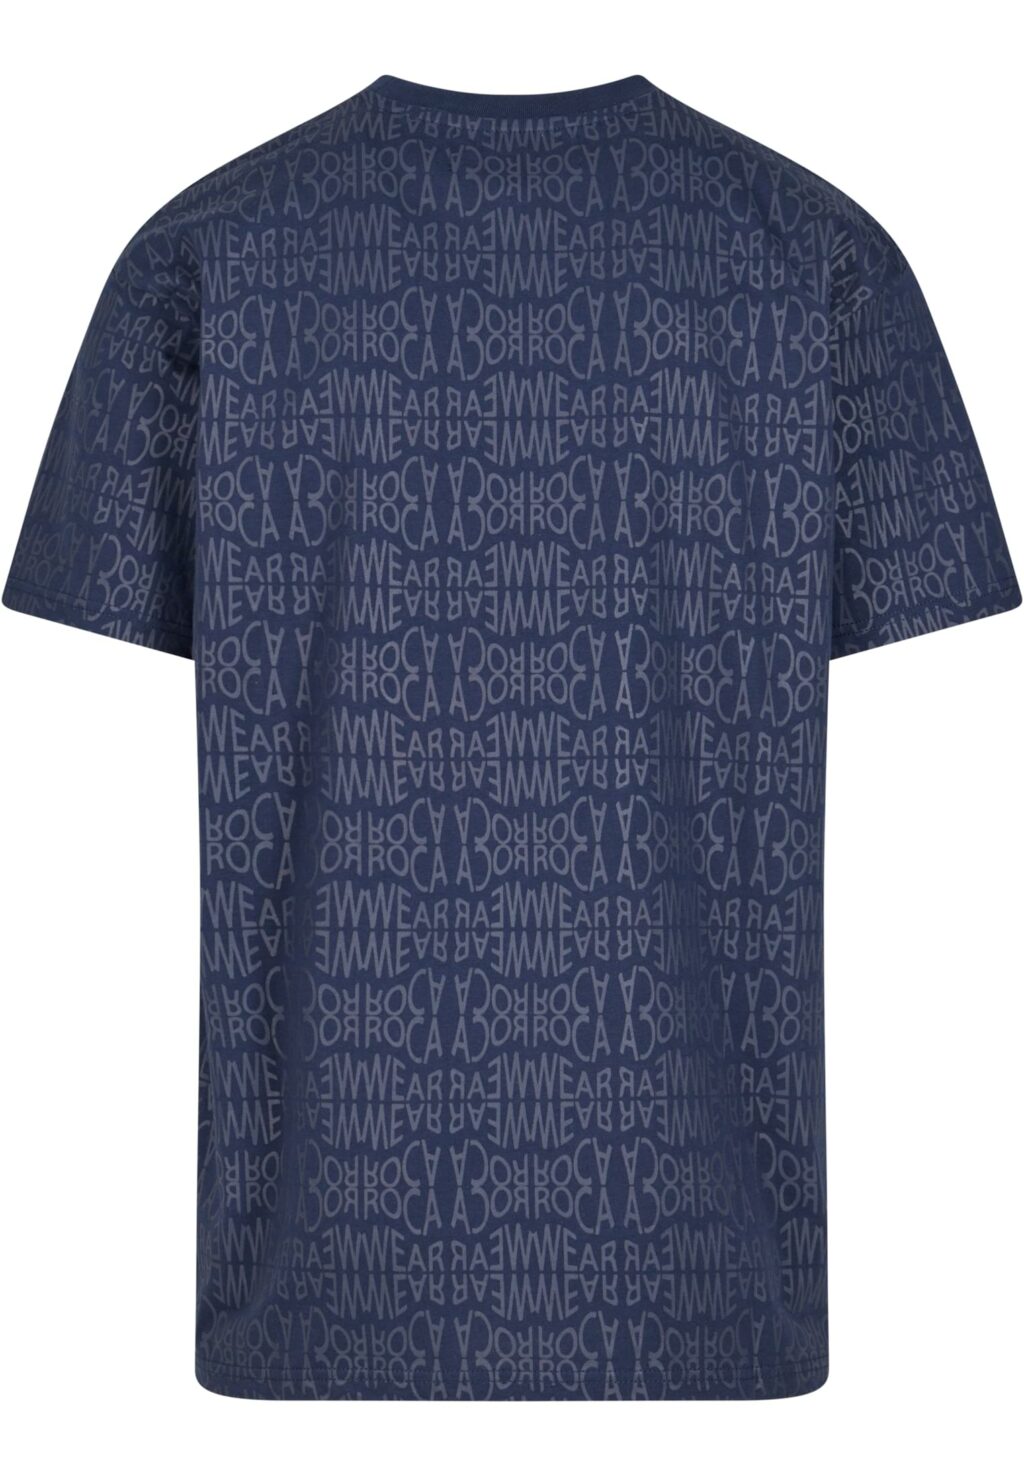 Rocawear Tshirt Roca blue RWTS095